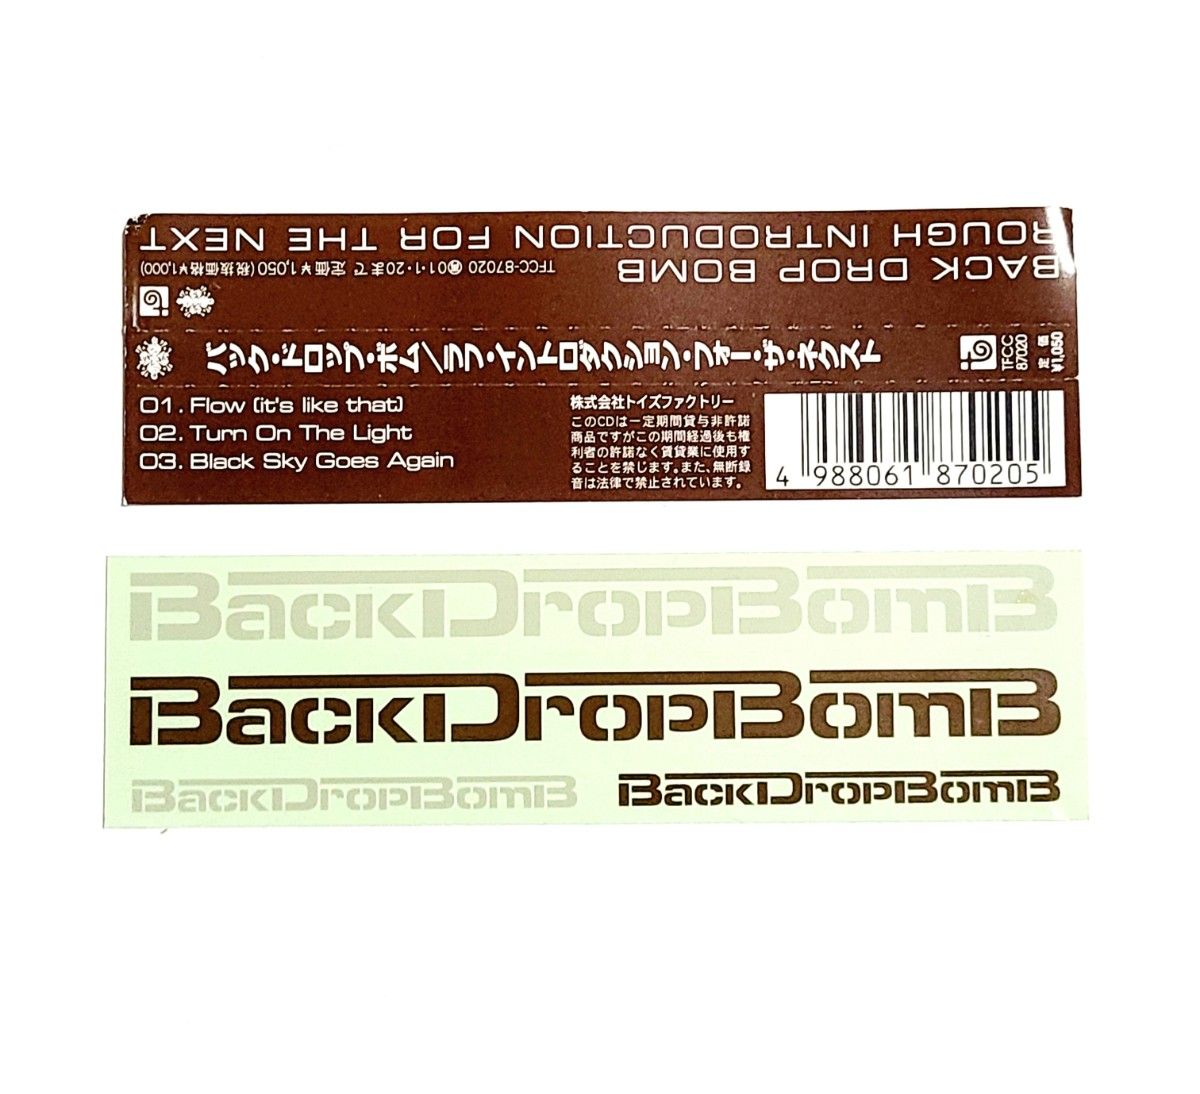 【マキシシングルCD】「BACK DROP BOMB」/ ROUGH  INTRODUCTION FOR THE NEXT